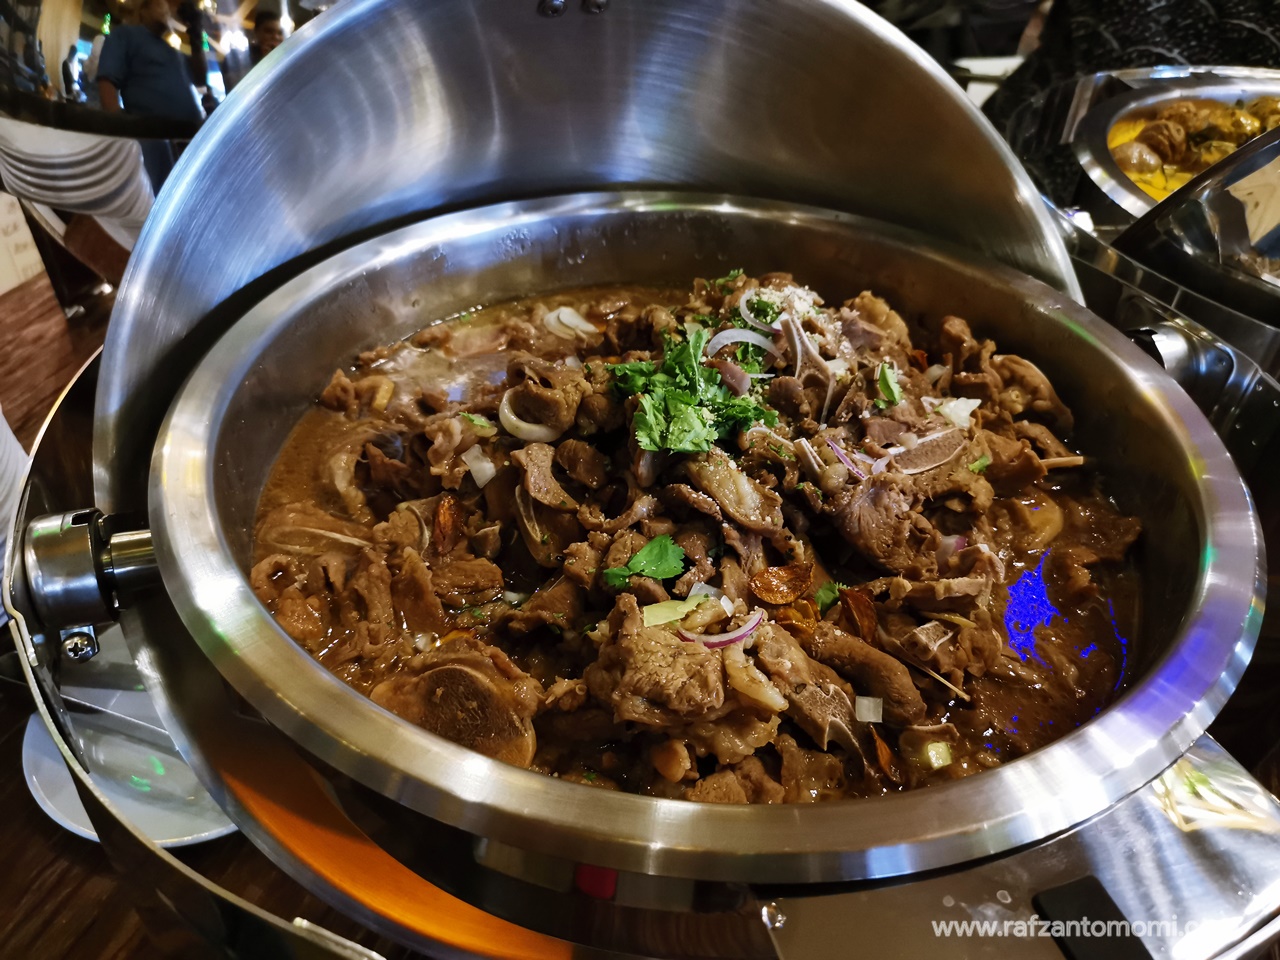 Buffet Ramadan 2019 - Restoran Me'nate Steak Hub, Shah Alam